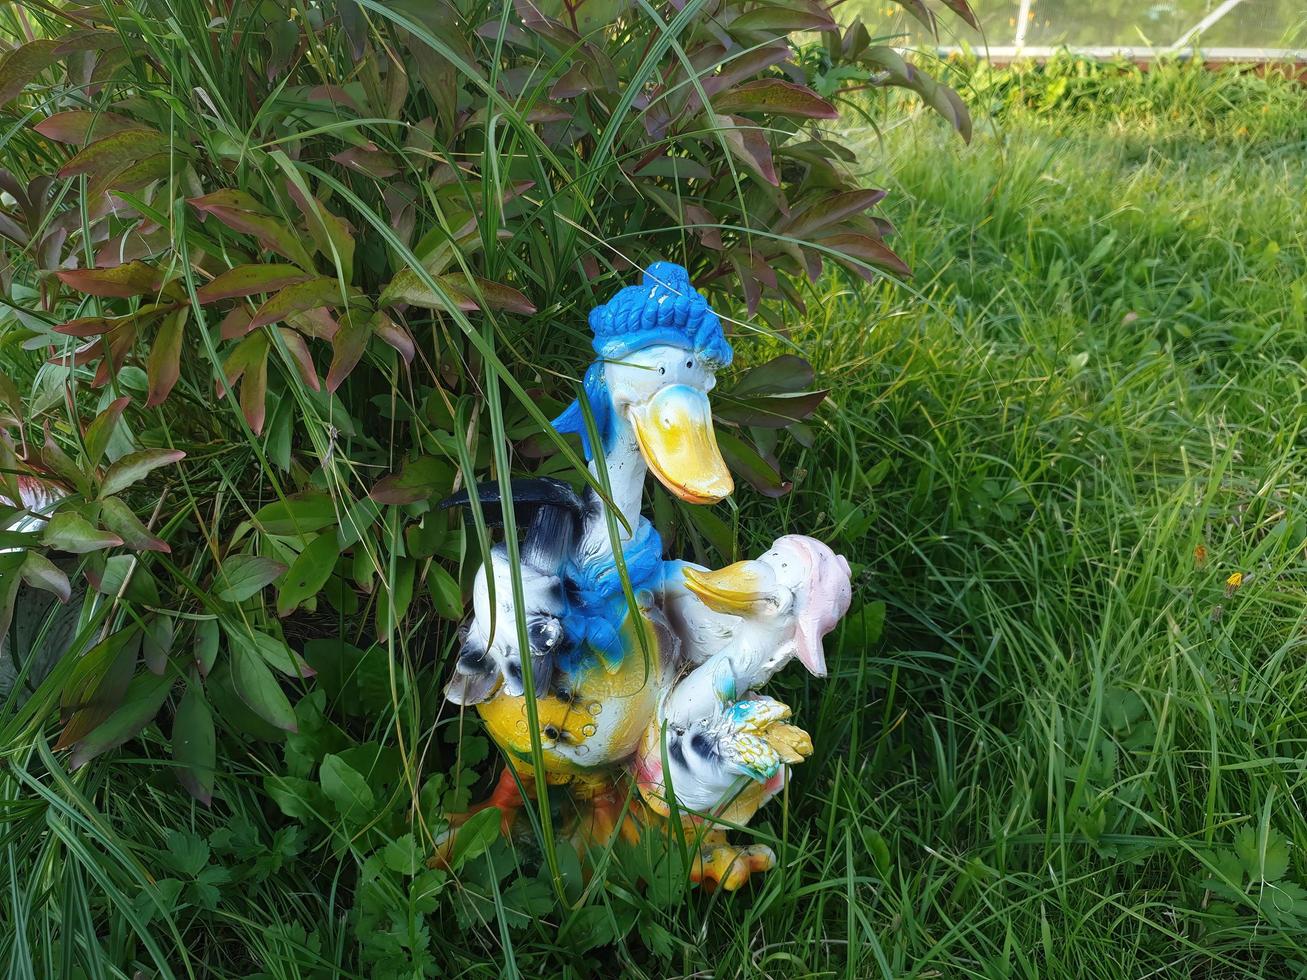 décoration décorative en forme de canard et caneton dans notre jardin photo